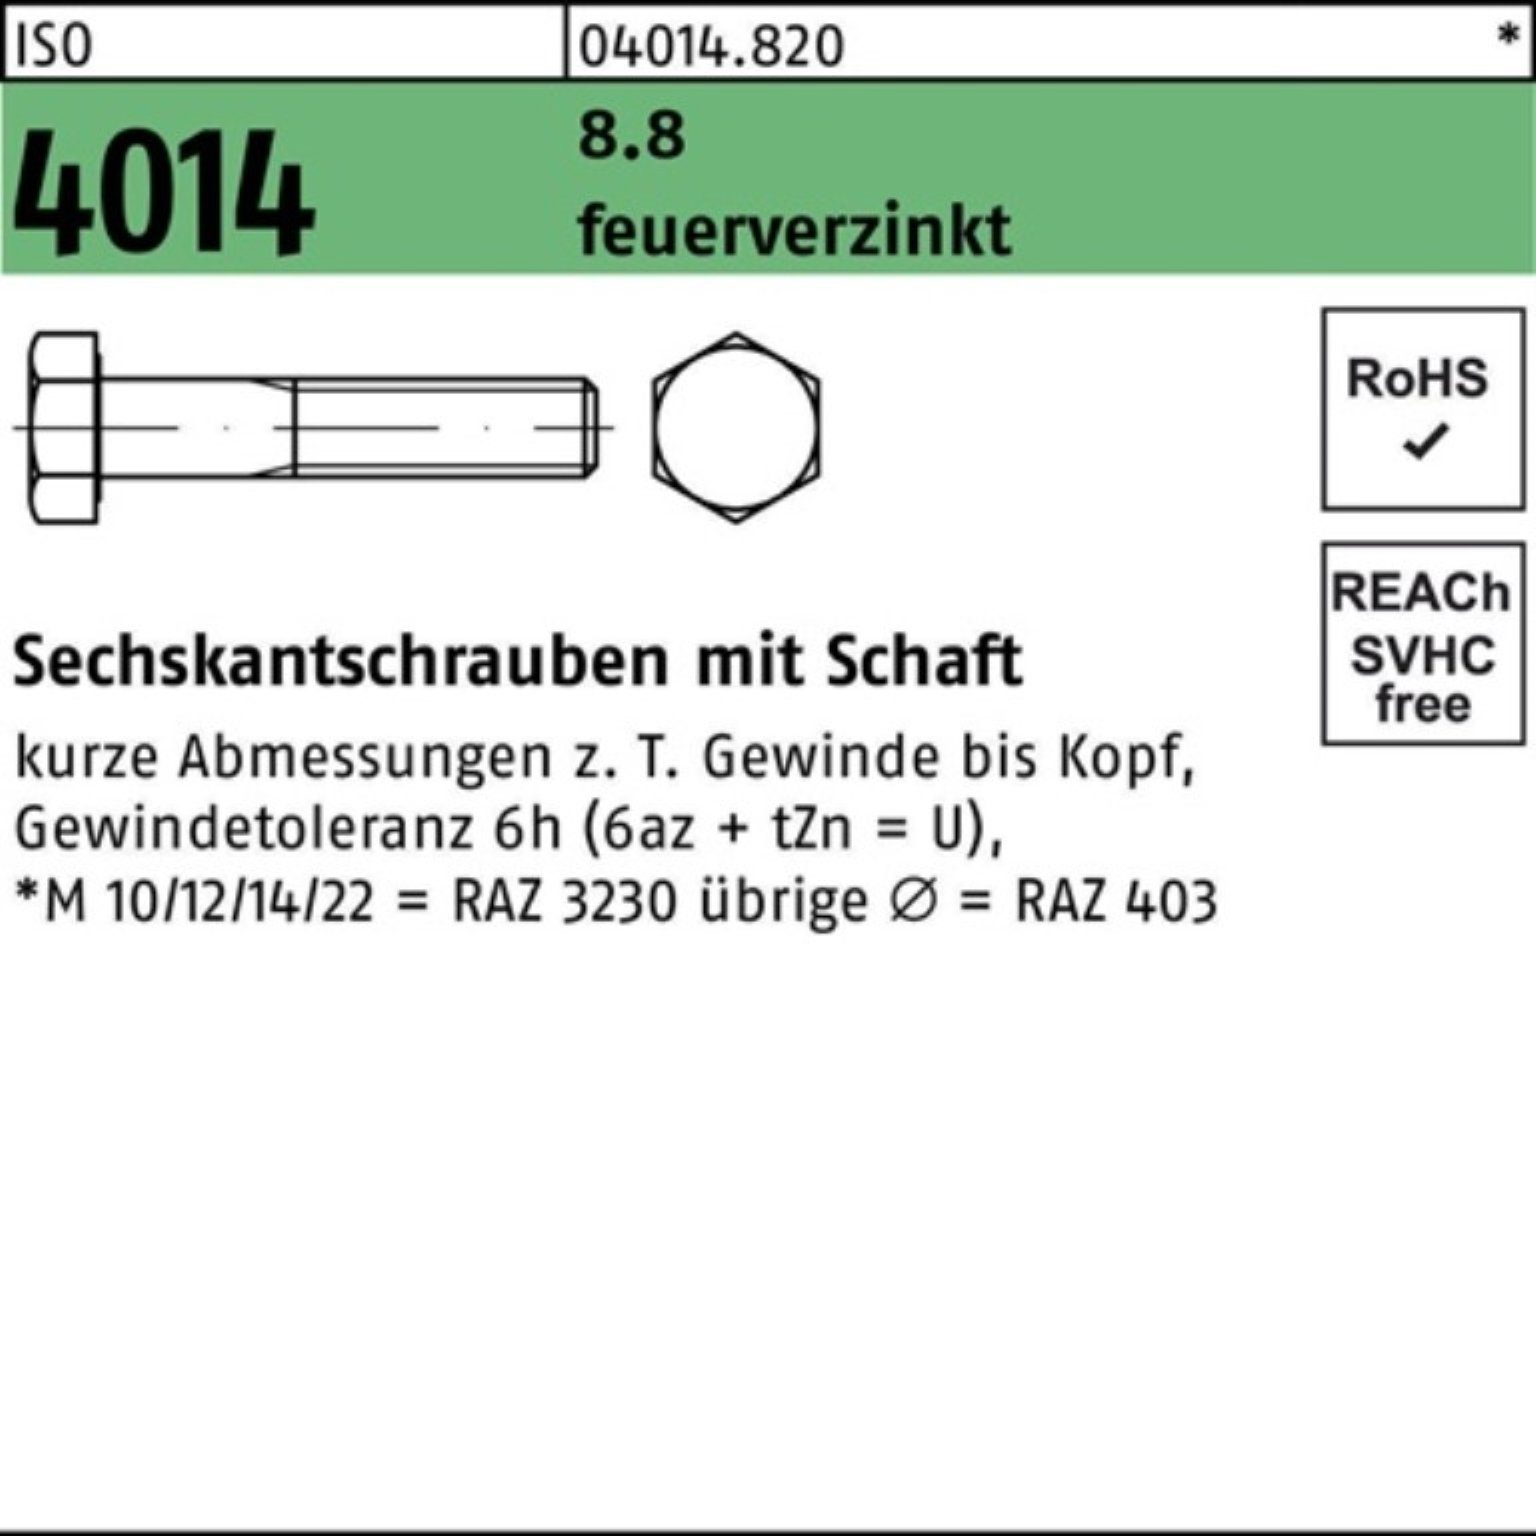 Bufab Sechskantschraube 100er 4014 Pack M16x 8.8 110 Schaft Sechskantschraube 2 ISO feuerverz